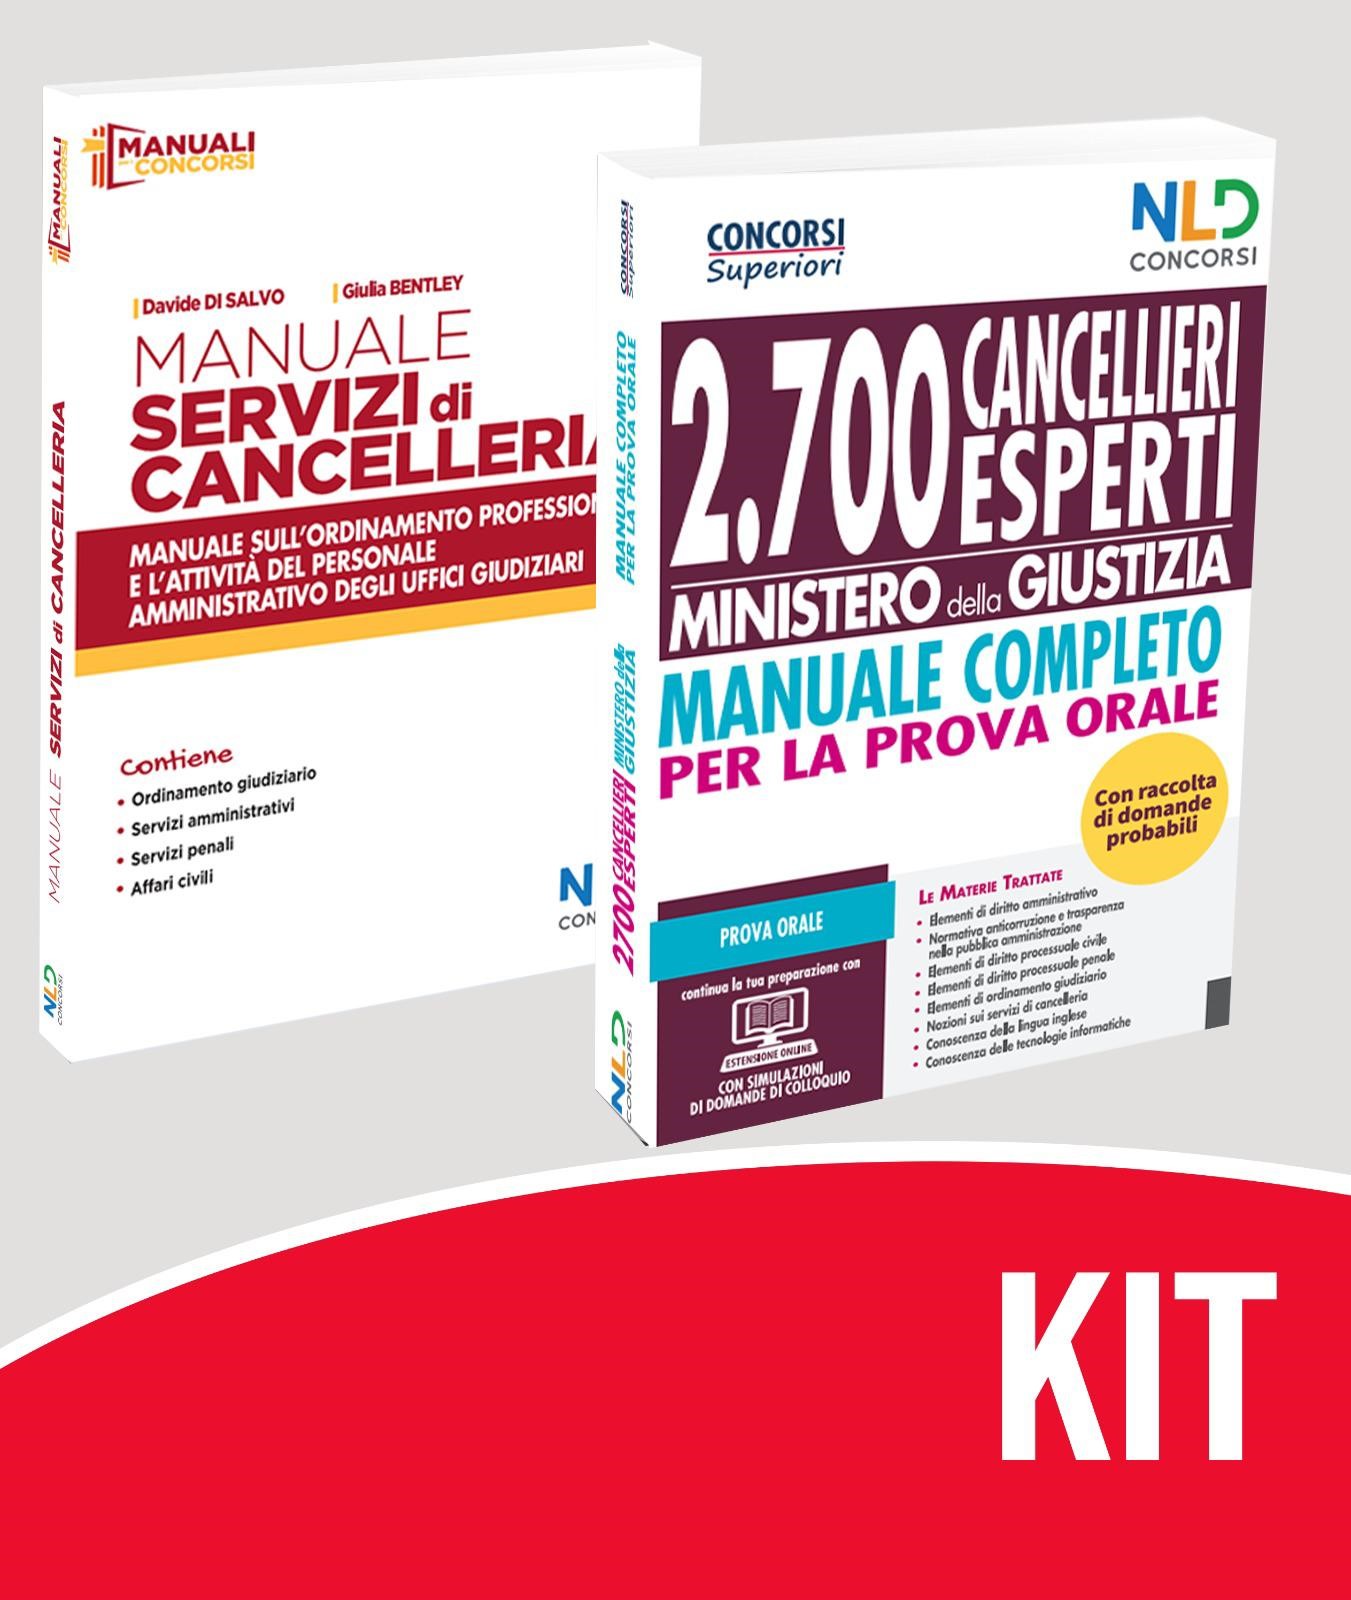 Concorso Ministero Giustizia 2021: kit Manuale Concorso 2700 Cancellieri Esperti + Manuale Servizi Cancelleria